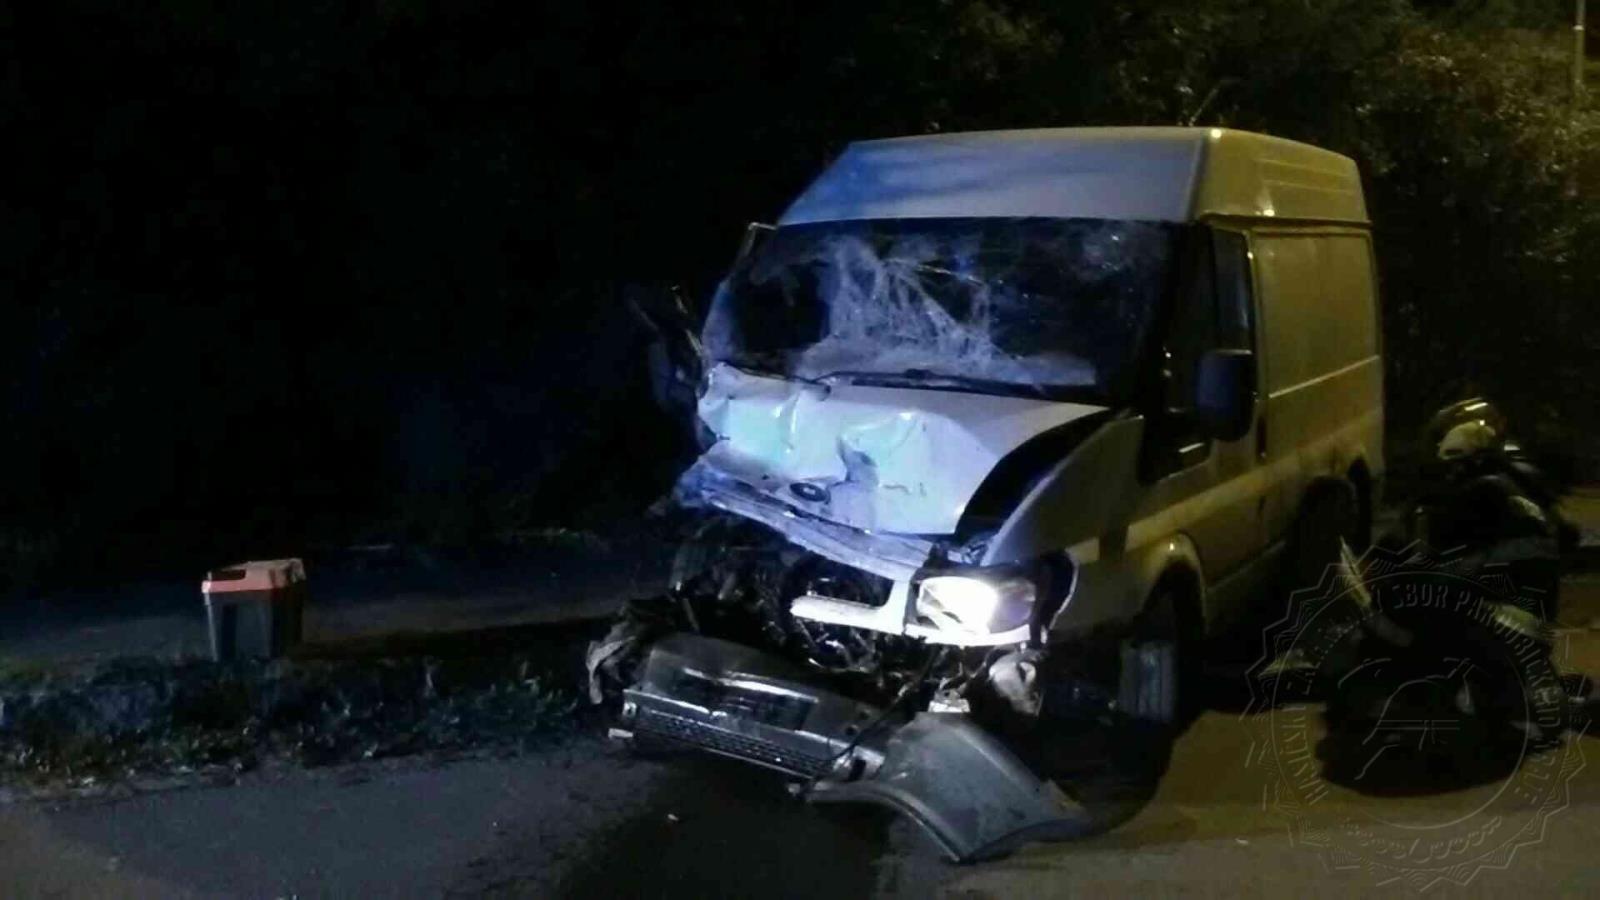 Dopravní nehoda kamion s dodávkou Prachovice 9.10.2020.jpg